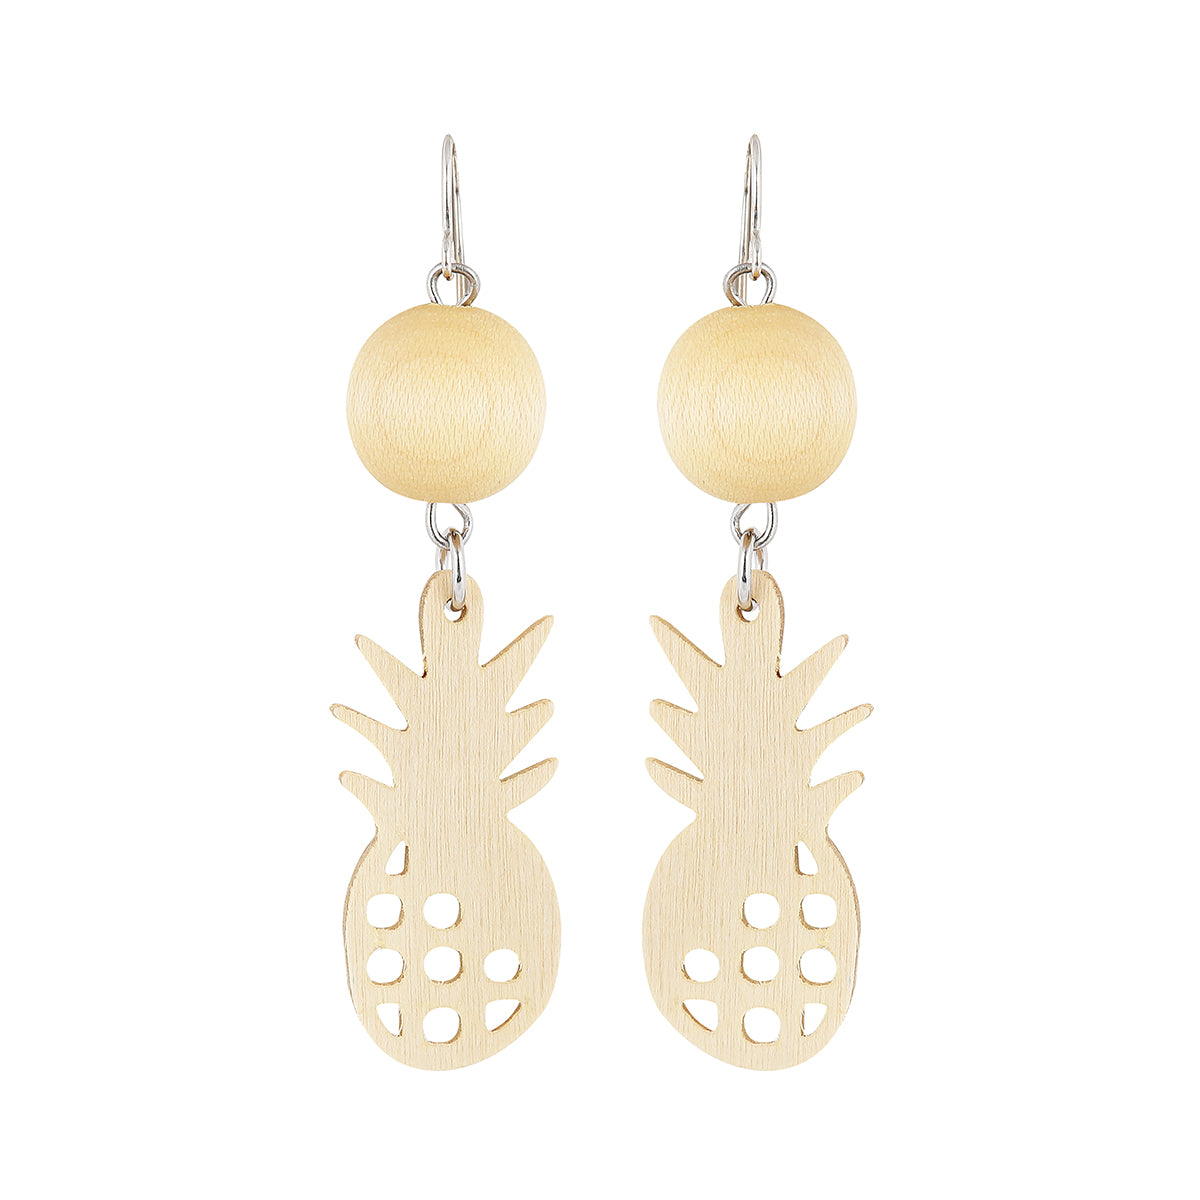 Ananas earrings